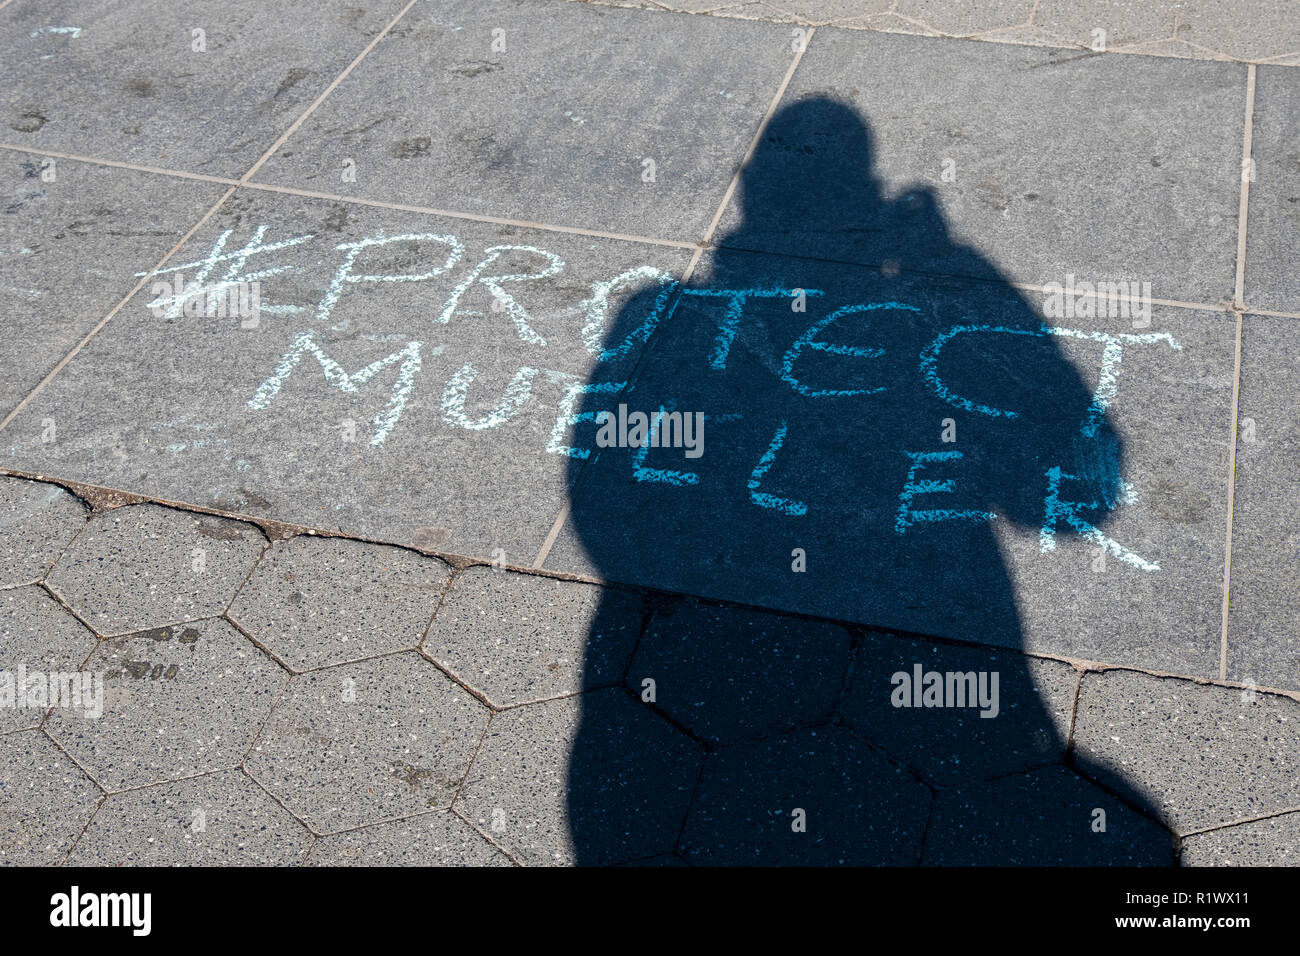 Die Kreide schreiben ion Washington Square Park drängt Leute, die Robert Mueller Ermittlungen gegen Trumpf zu schützen. Stockfoto